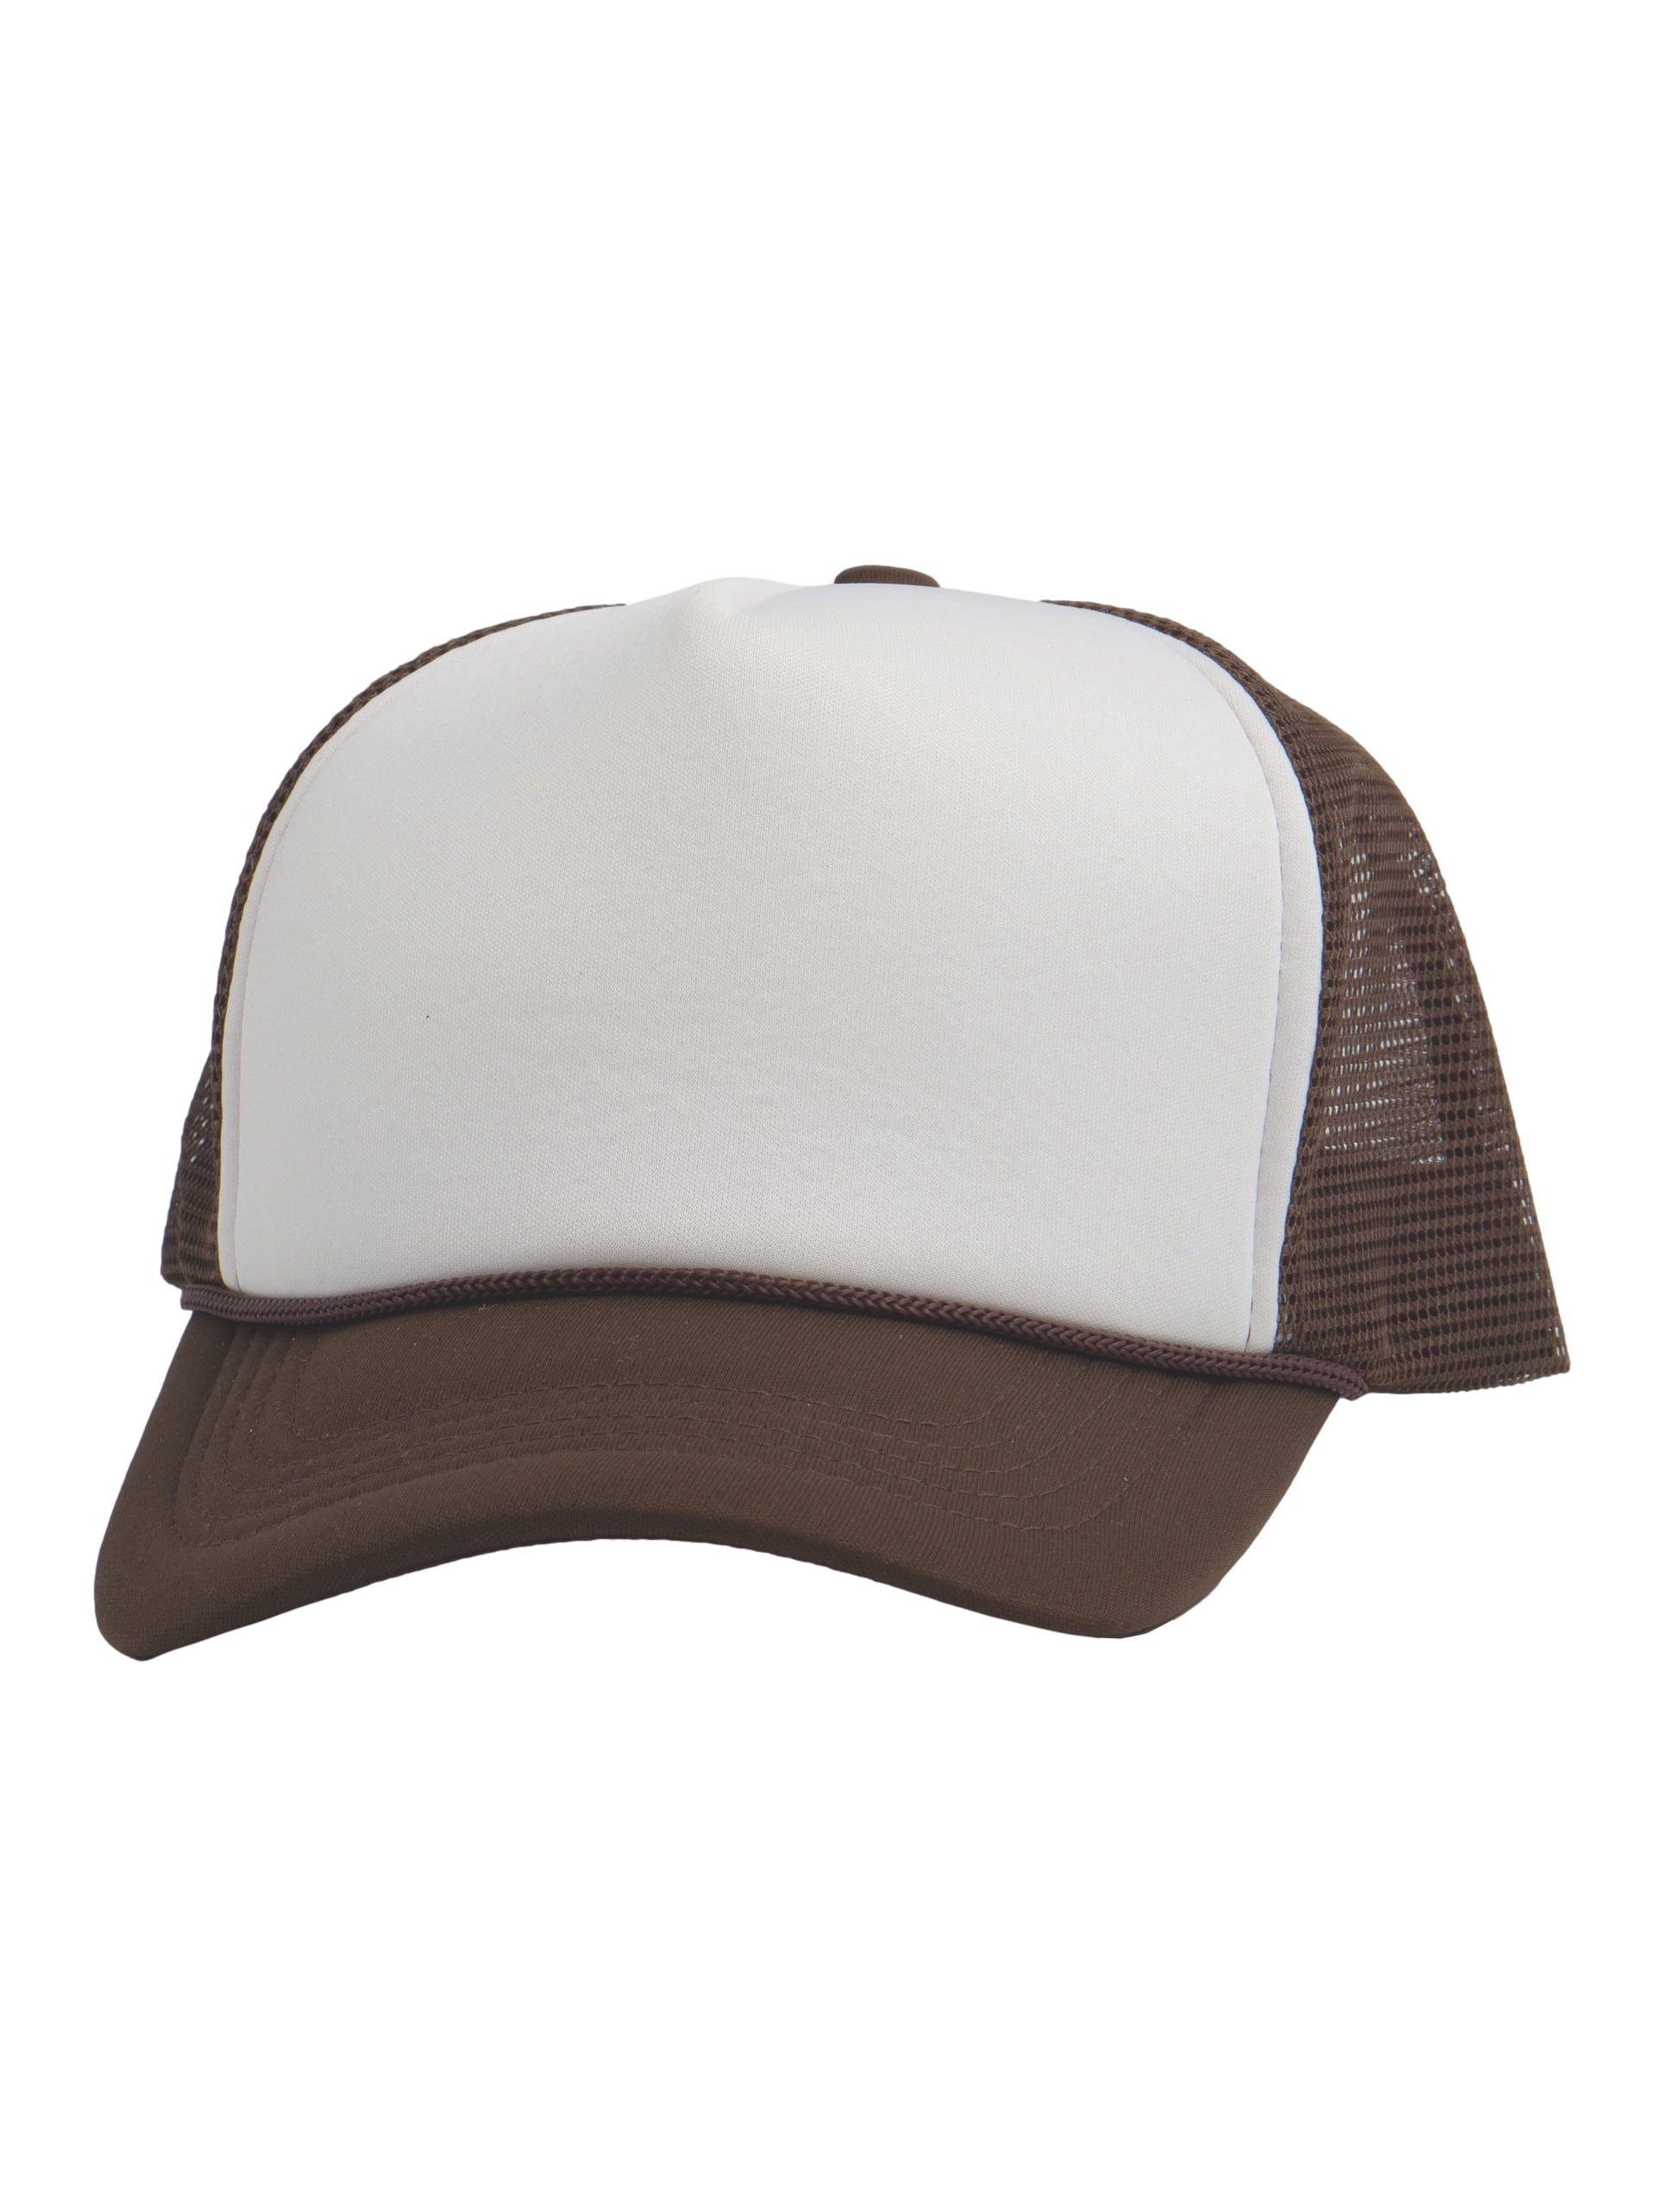 Top Headwear Blank Trucker Hat - Mens Trucker Hats Foam Mesh Snapback  White/Brown